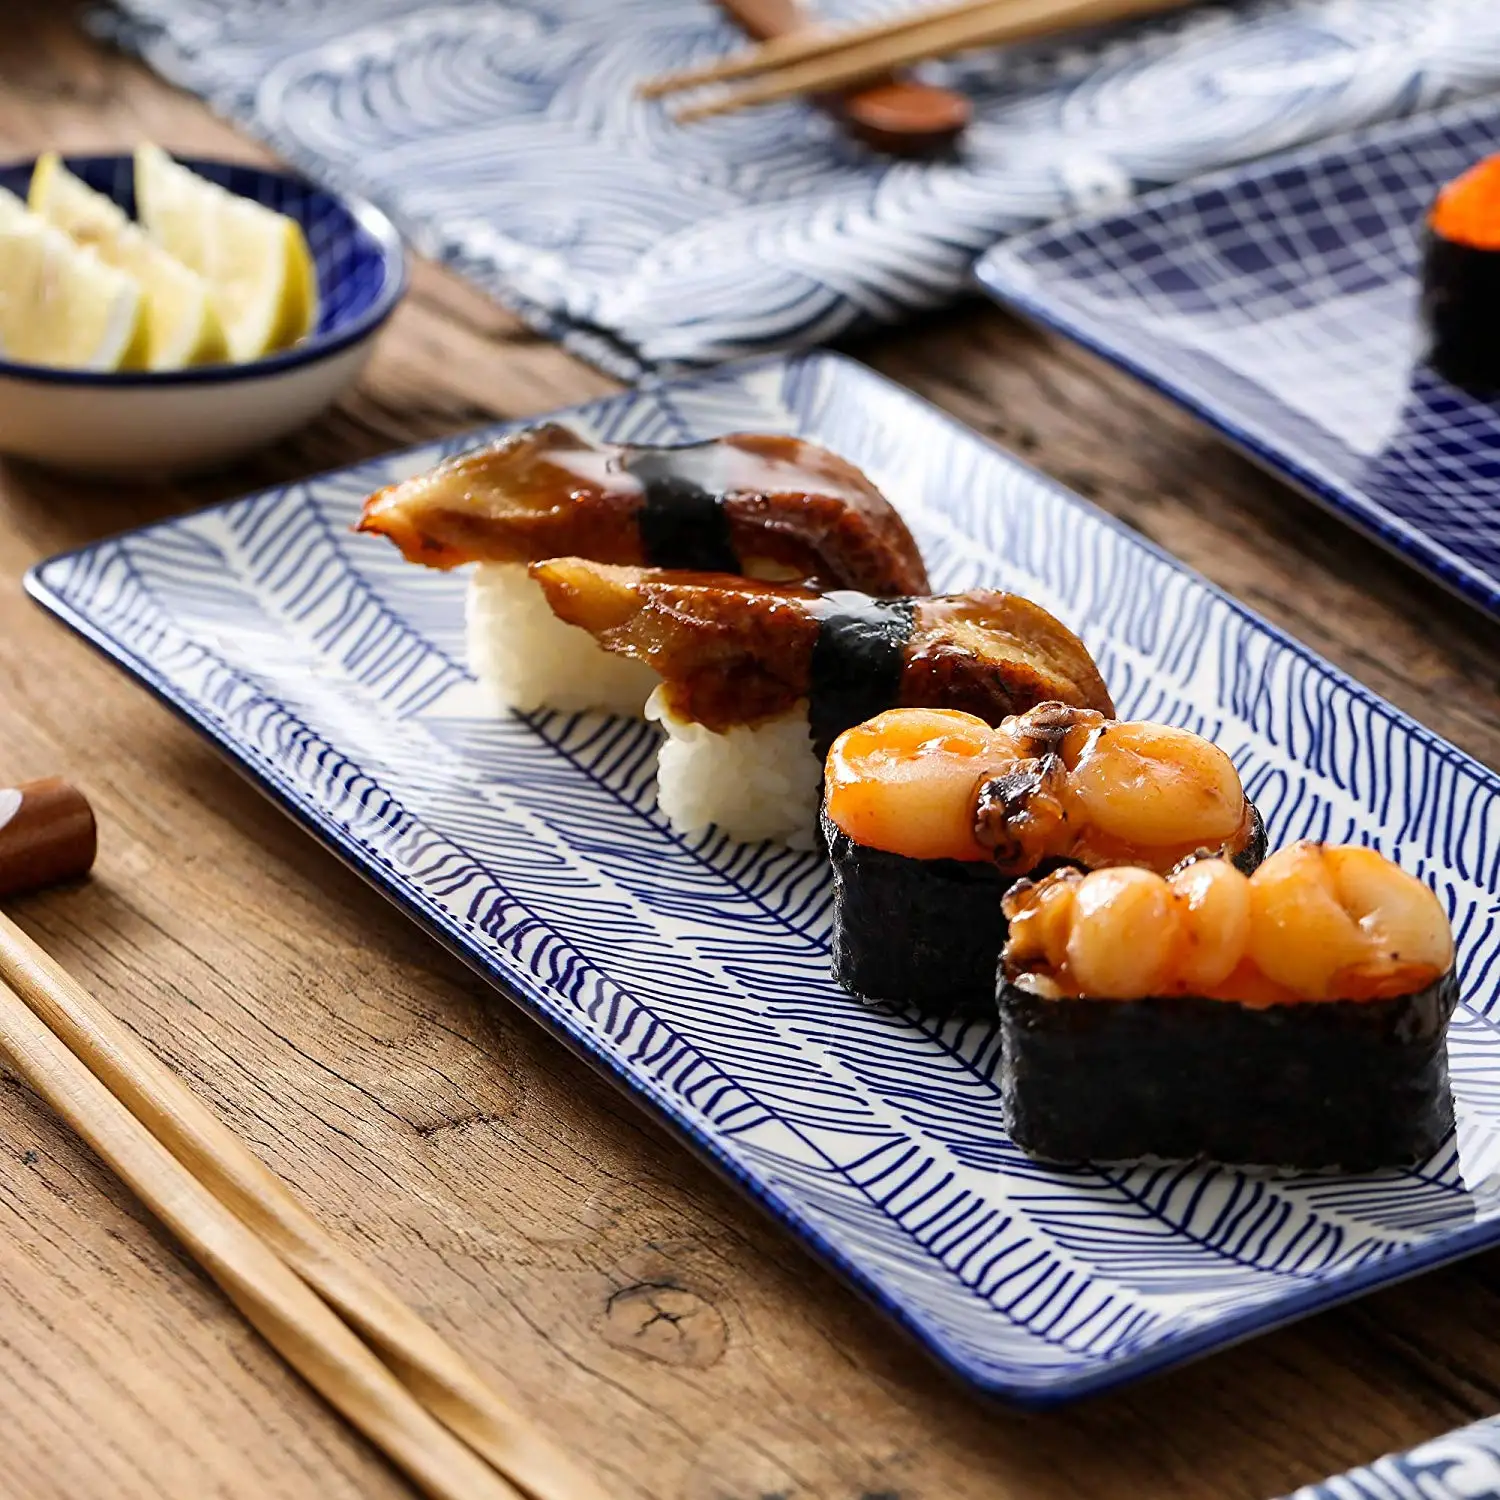 vancasso Tulip Set Piatti Sushi in Ceramica 6 pezzi Stile Giapponese Servizio da Sushi per 2 persone Con 2 Ciotole Riso 2 Piattini per Salse 2 Piatti da Sushi 2 Bacchette di bambù Colore Verde Beige 